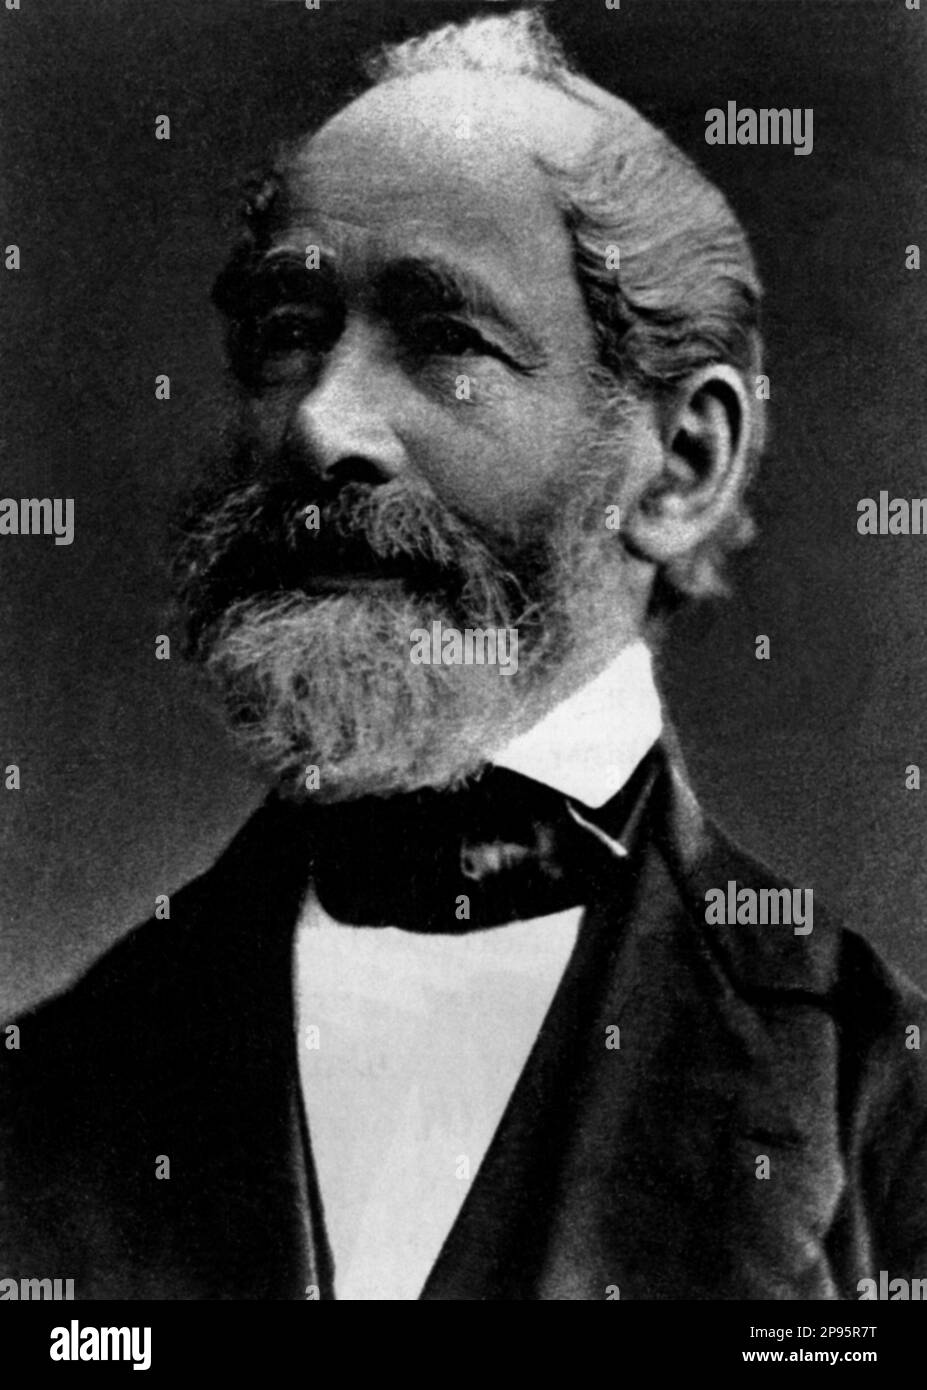 1880 c, GERMANIA : l'industriale tedesco CARL ZEISS (1816-1888). Era un ottico comunemente conosciuto per l'azienda che ha fondato, Zeiss. Zeiss stesso ha anche apportato alcuni contributi alla produzione di lenti che hanno aiutato la moderna produzione di lenti . - PORTRAIT - ritratto - barba - barba - cravatta - cravatta - cravatta - papillon - foto storiche - foto storica - ottica - OTTICA - ottico - OTTICO - INDUSTRIA - industriale - industriale - INVENTORE - INVENTORE --- Archivio GBB Foto Stock